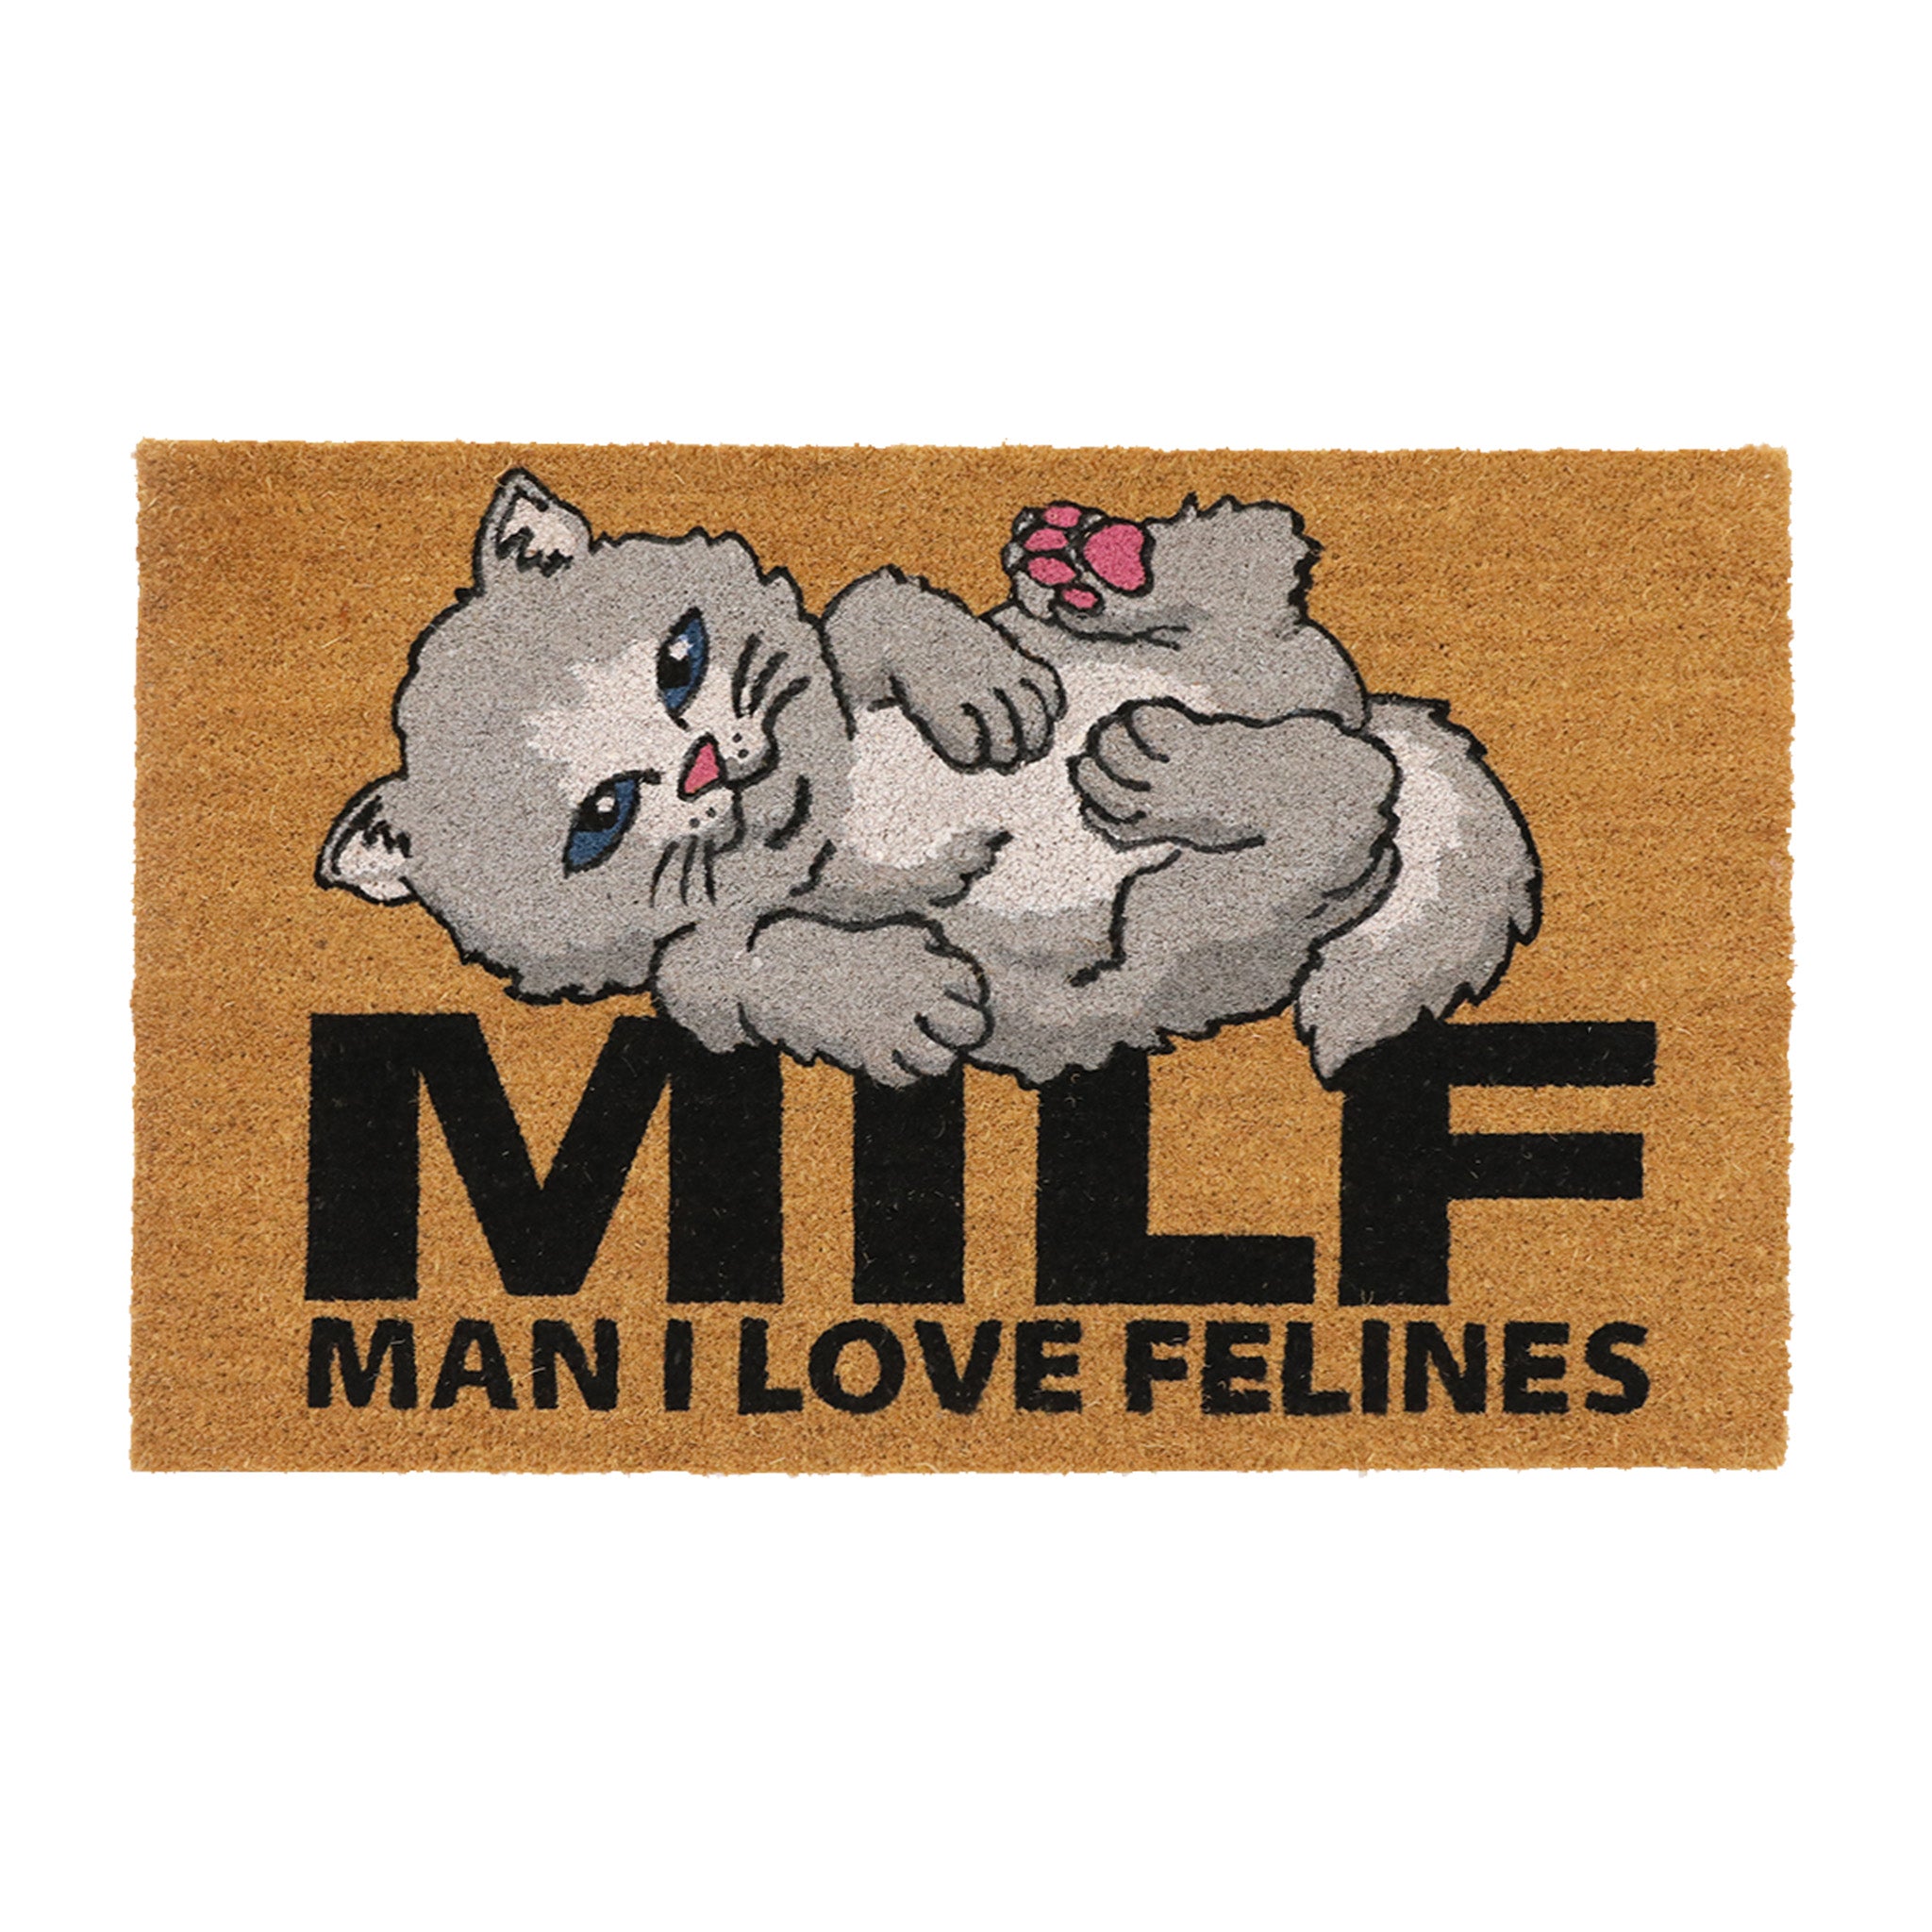 Man I Love Felines Rug (Brown)